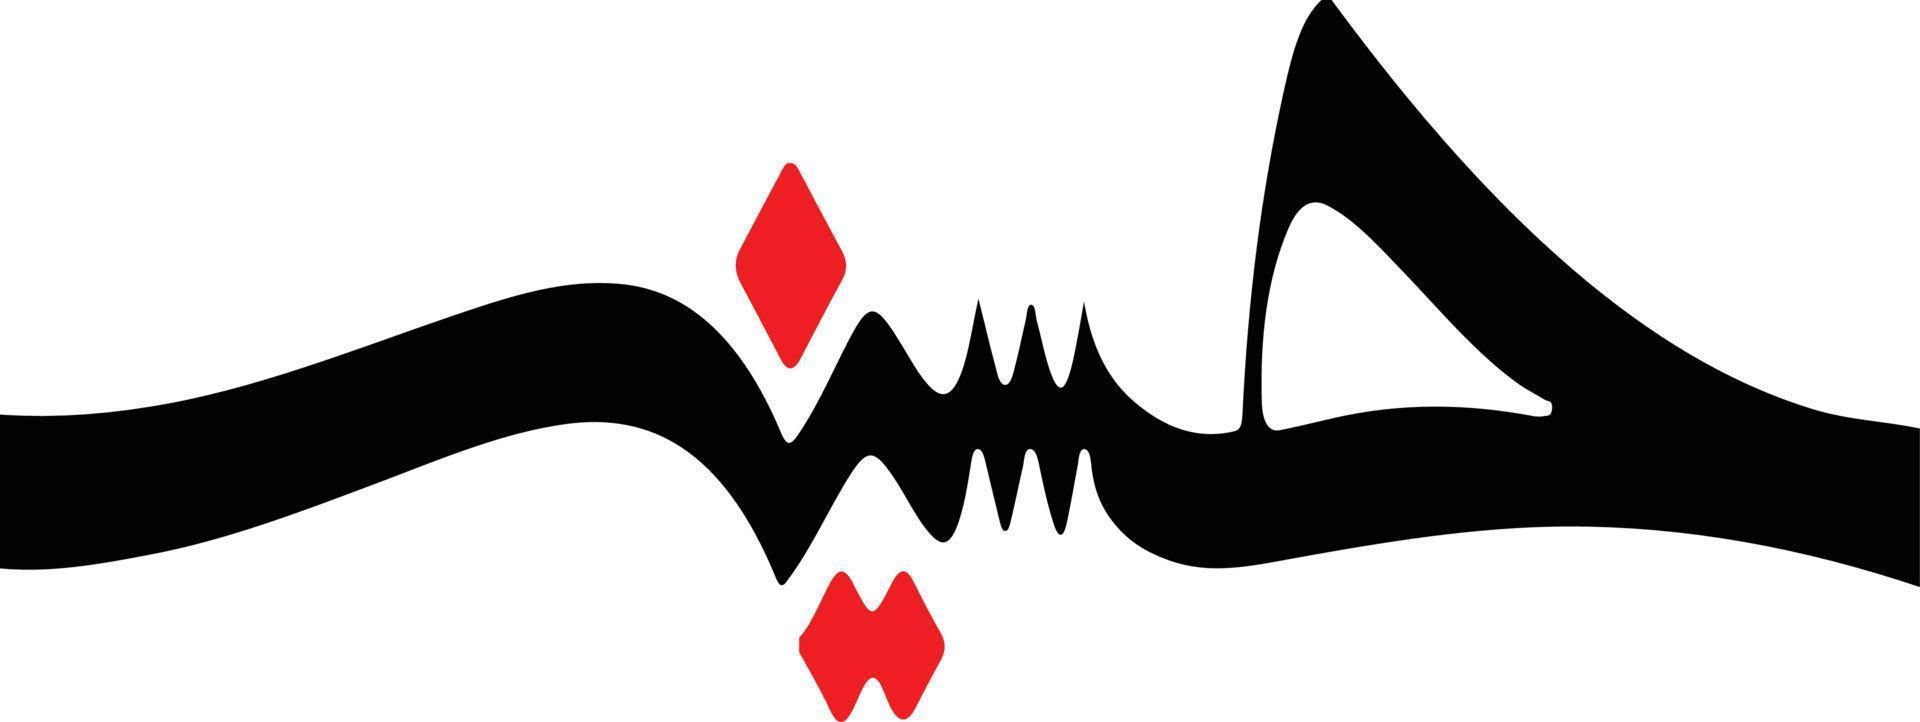 caligrafia islâmica hussaina vetor grátis